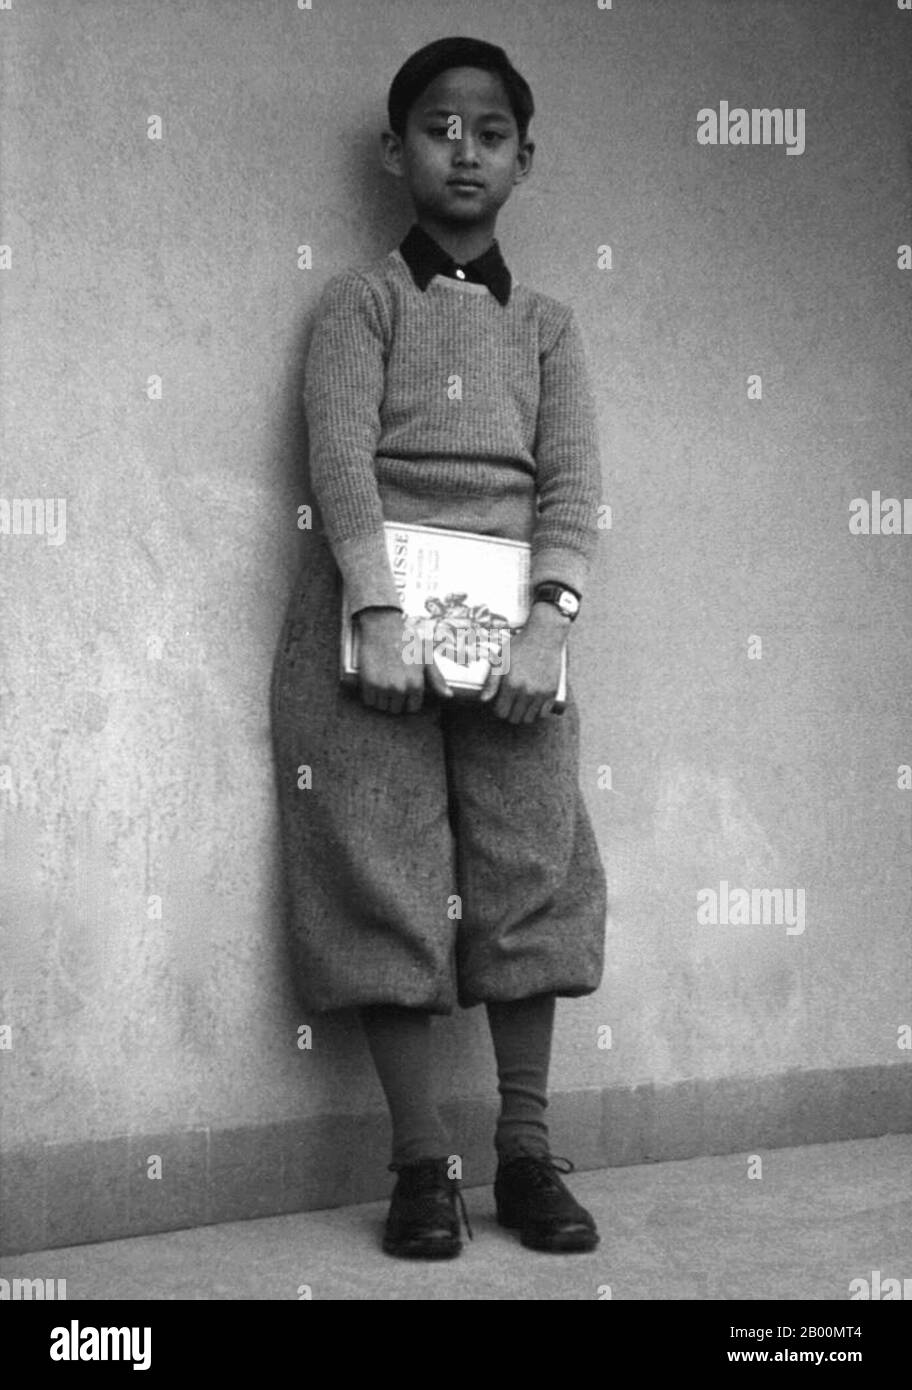 Thaïlande: Le futur roi Ananda Mahidol (Rama VIII) comme jeune prince étudiant en Suisse. Ananda Mahidol (20 septembre 1925 – 9 juin 1946) est le huitième monarque de Thaïlande sous la Maison de Chakri. Il a été reconnu roi par l'Assemblée nationale en mars 1935. Il était un garçon de neuf ans vivant en Suisse à cette époque. Il est retourné en Thaïlande en décembre 1945. Le 9 juin 1946, le roi a été retrouvé abattu dans sa chambre dans le hall du trône de Boromphiman (un palais résidentiel moderne situé dans le Grand Palais), quatre jours seulement avant son retour en Suisse. Banque D'Images